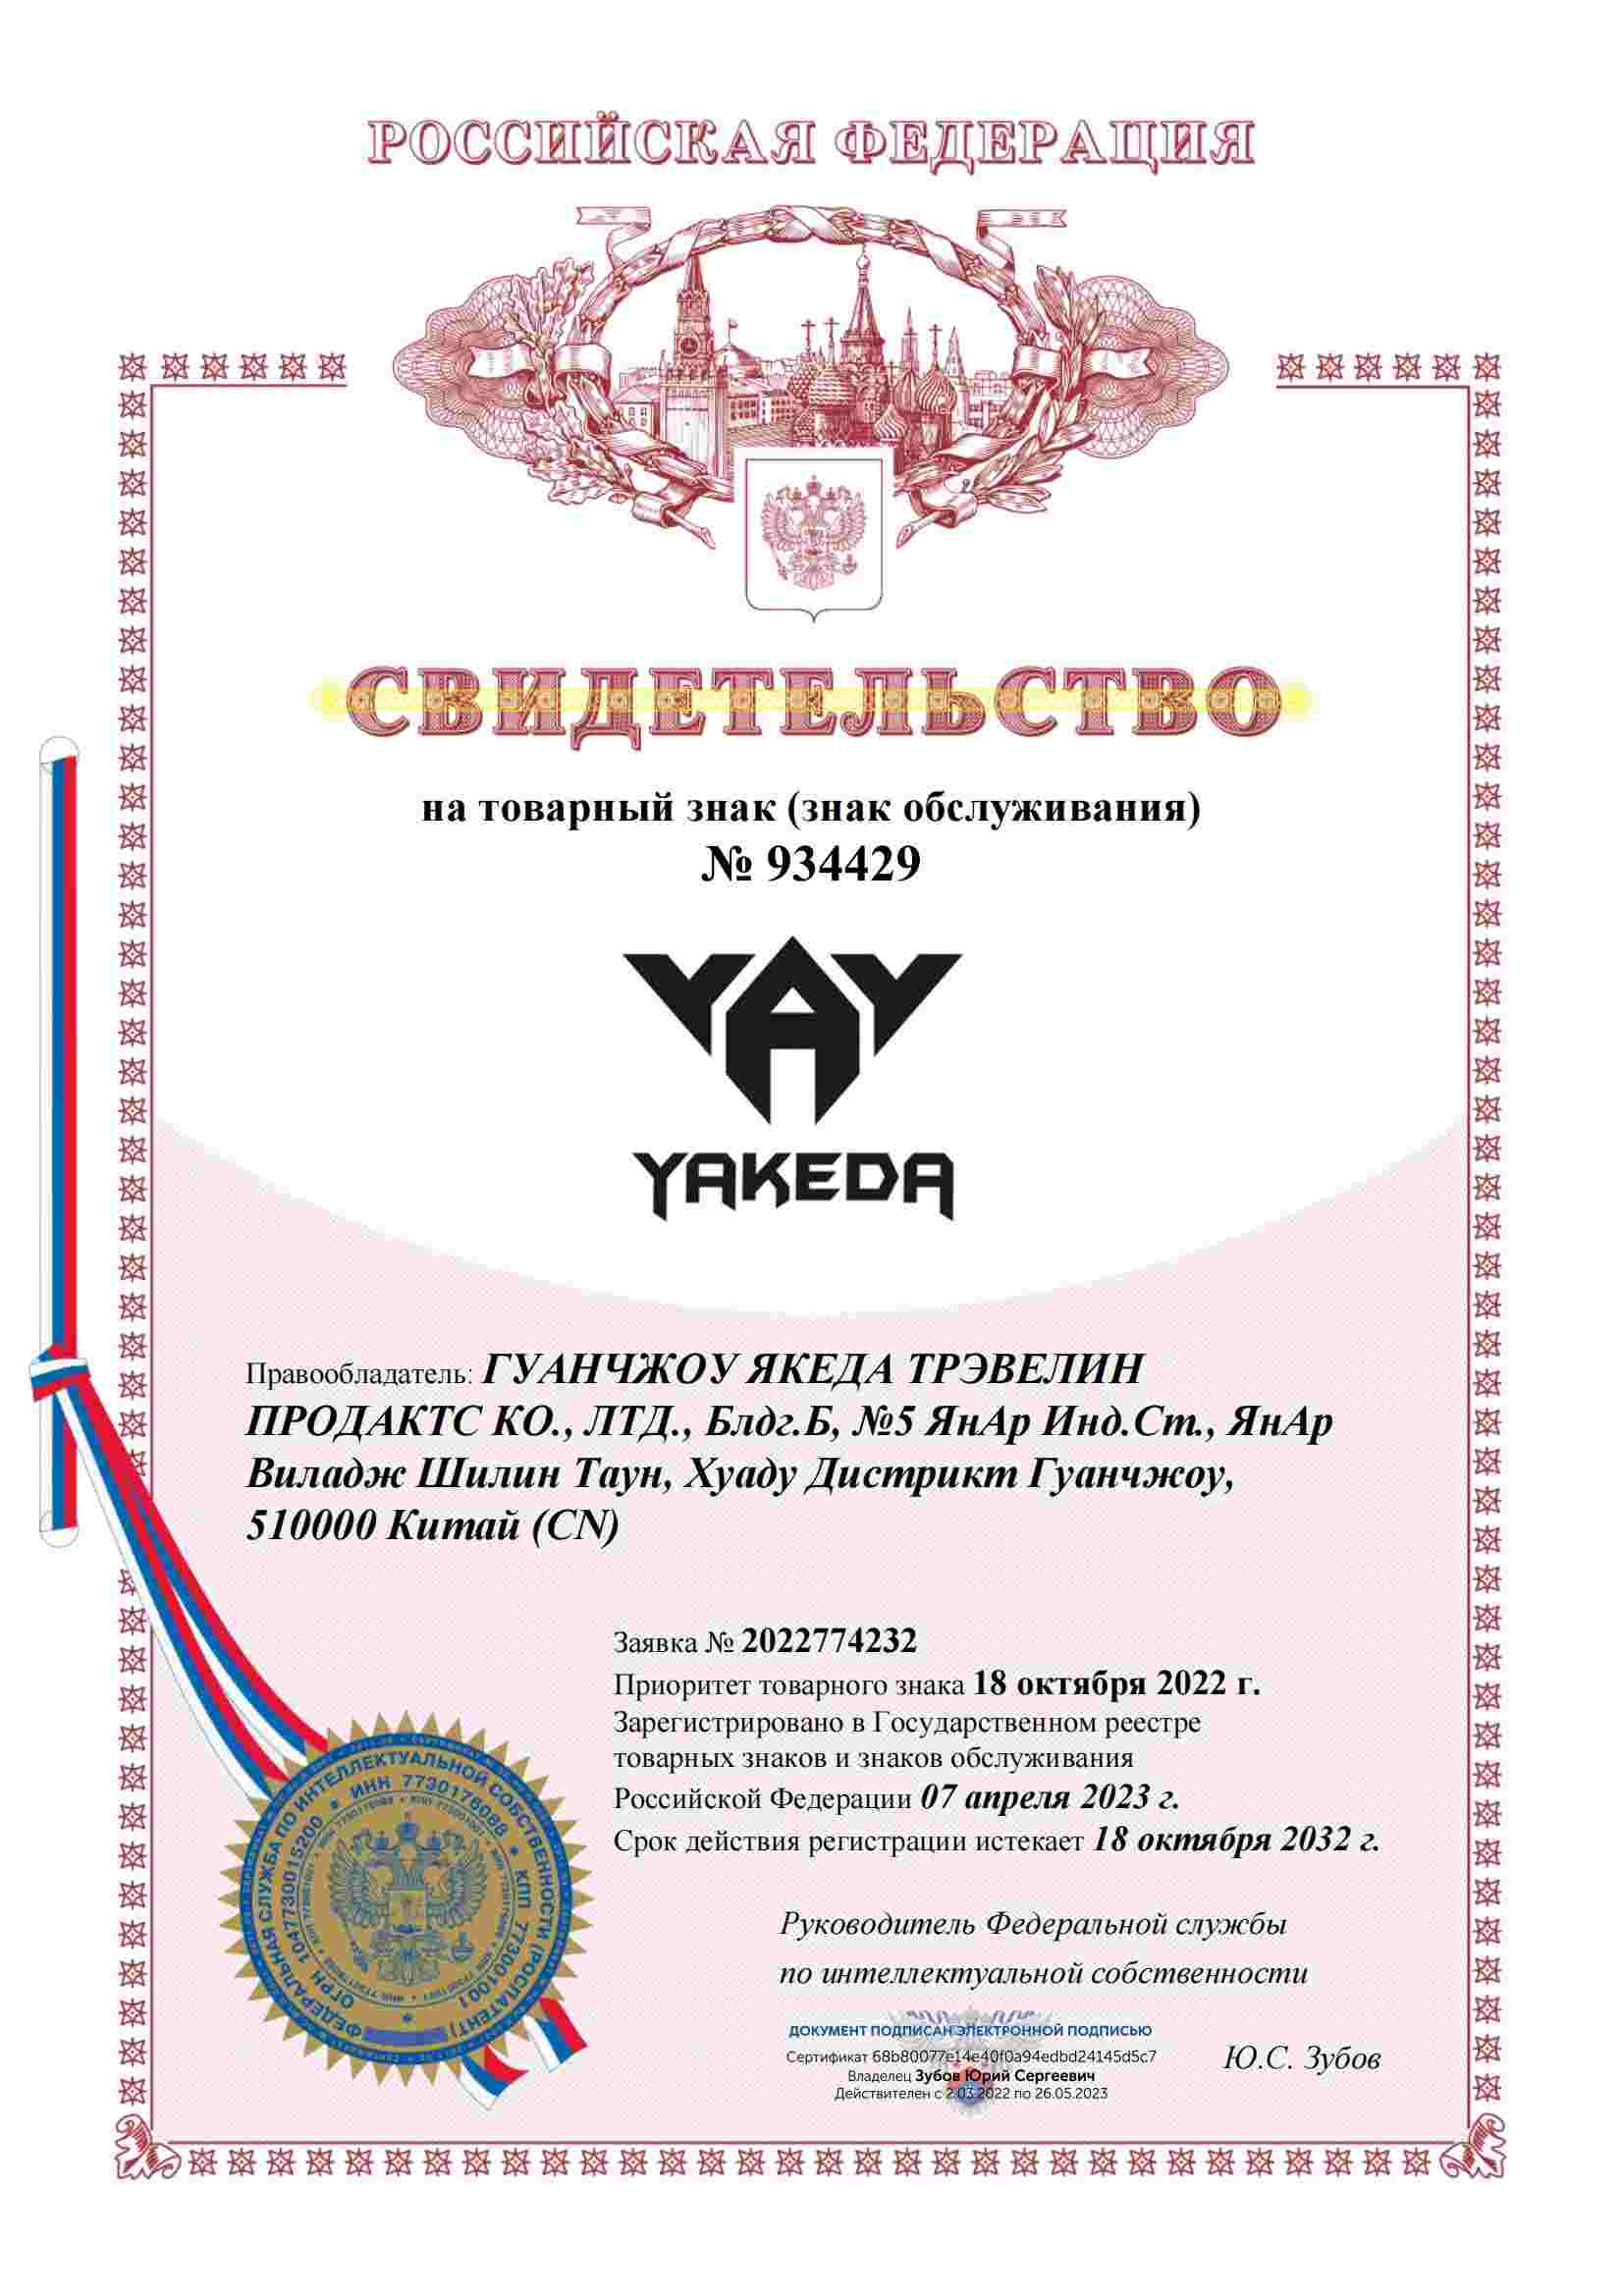 Certificat de marque russe